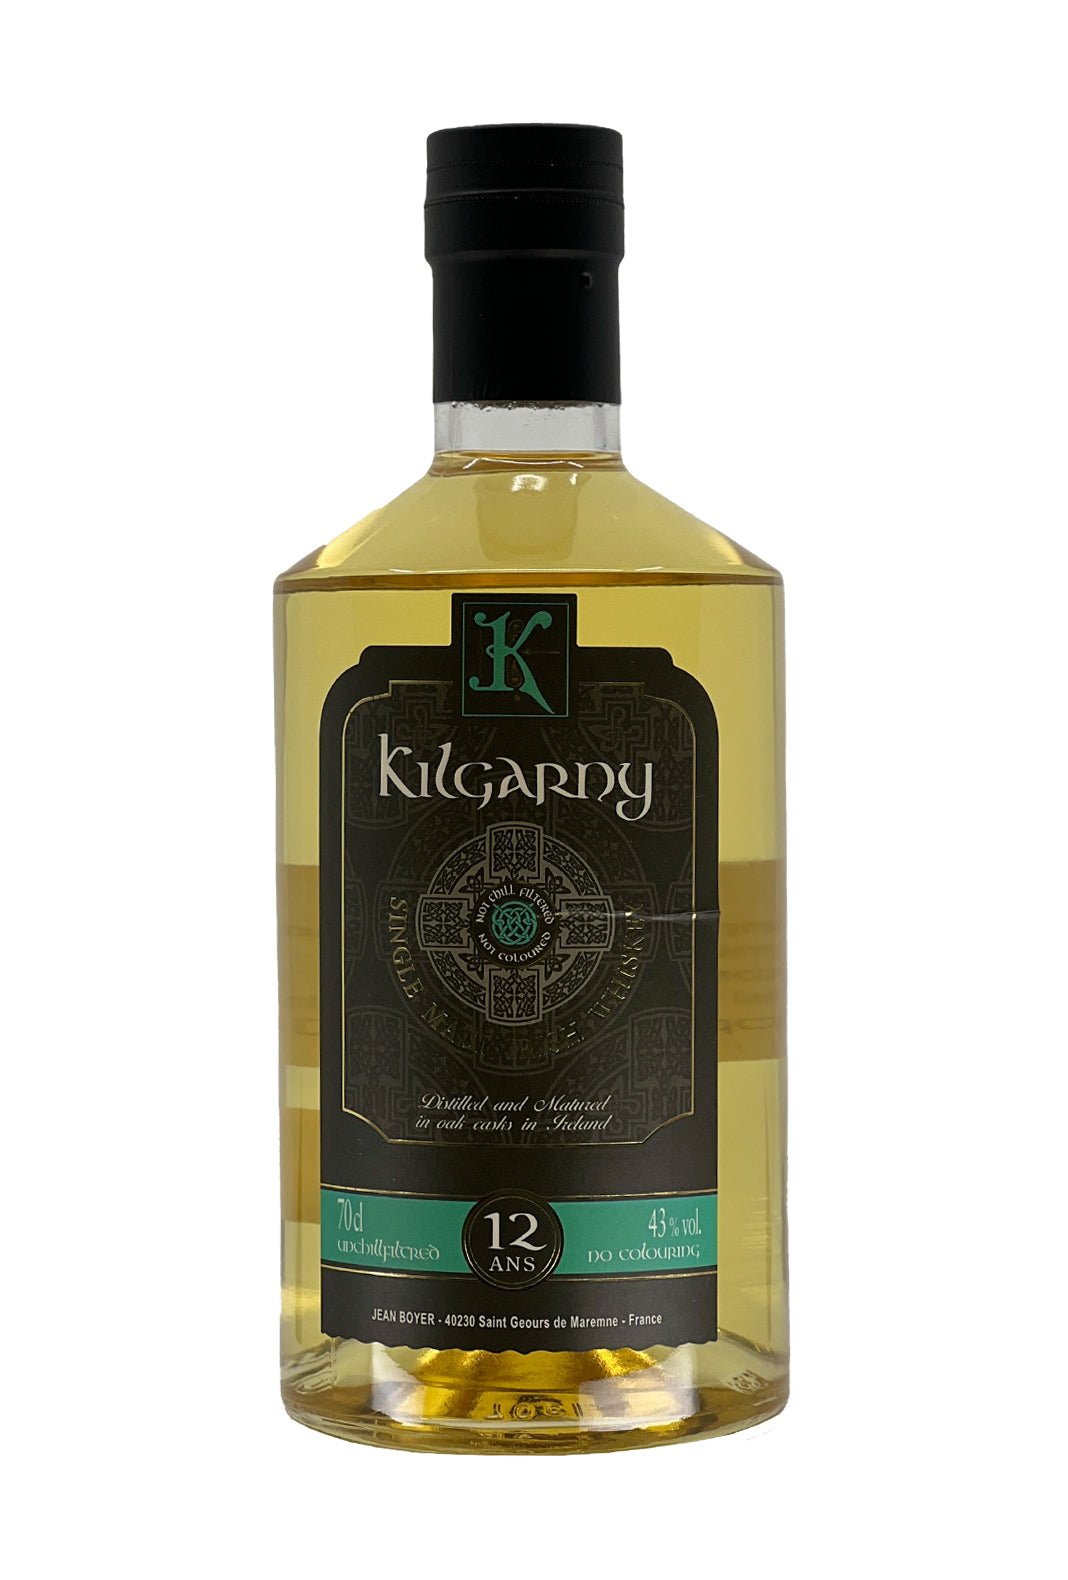 Jean Boyer Kilgarny 12 years Irish Whisky 43% 700ml | Whiskey | Shop online at Spirits of France